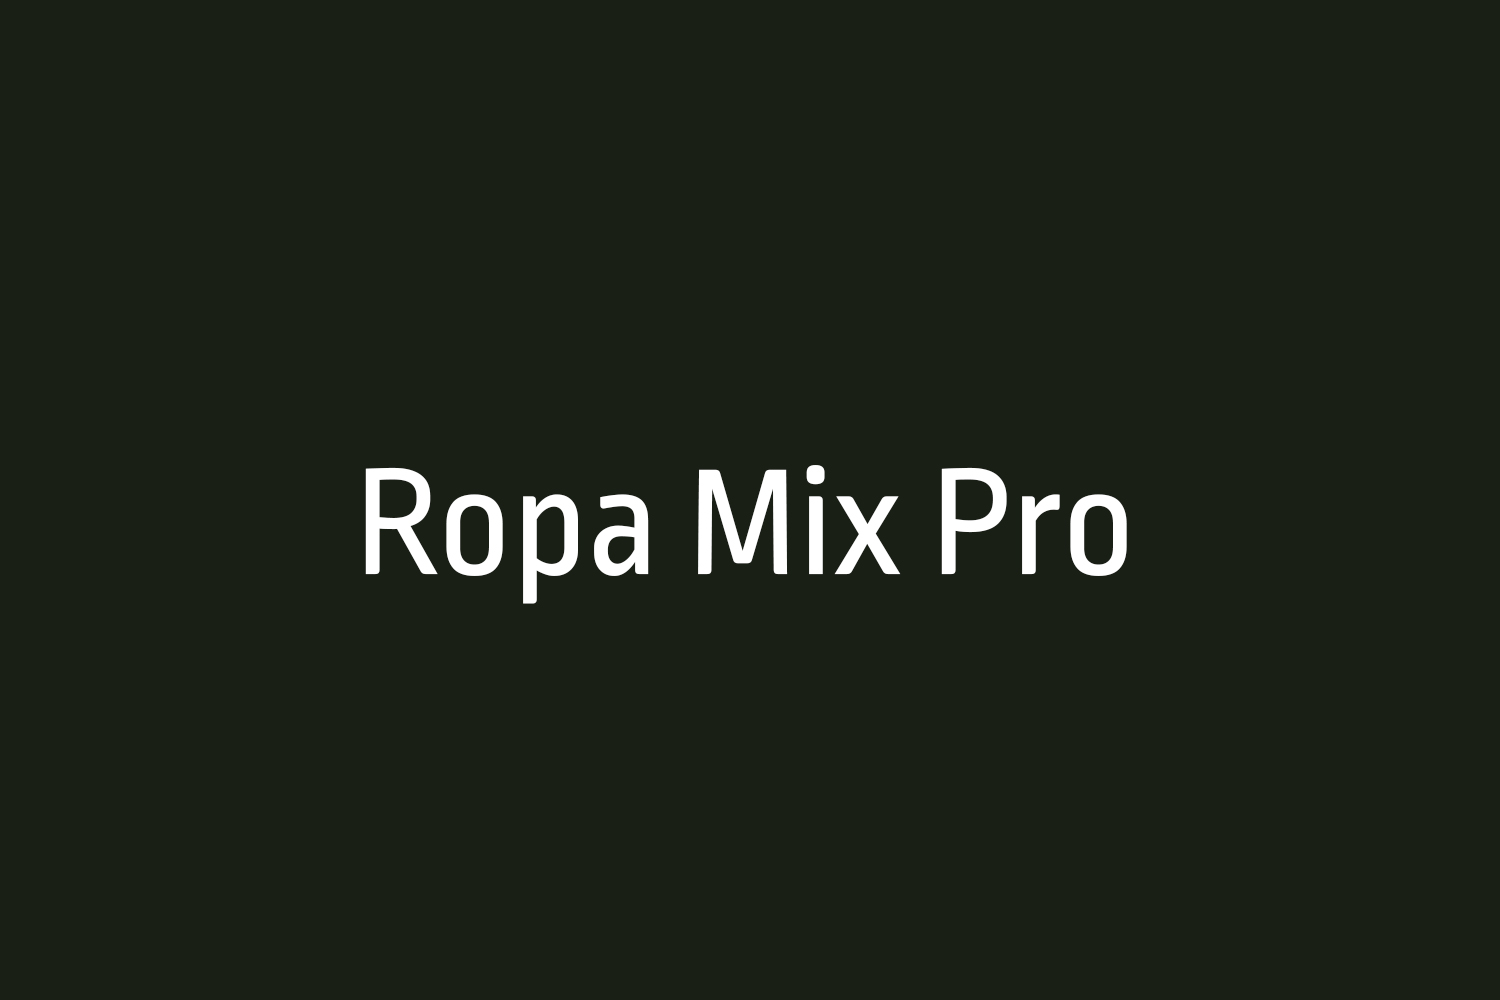 Ropa Mix Pro